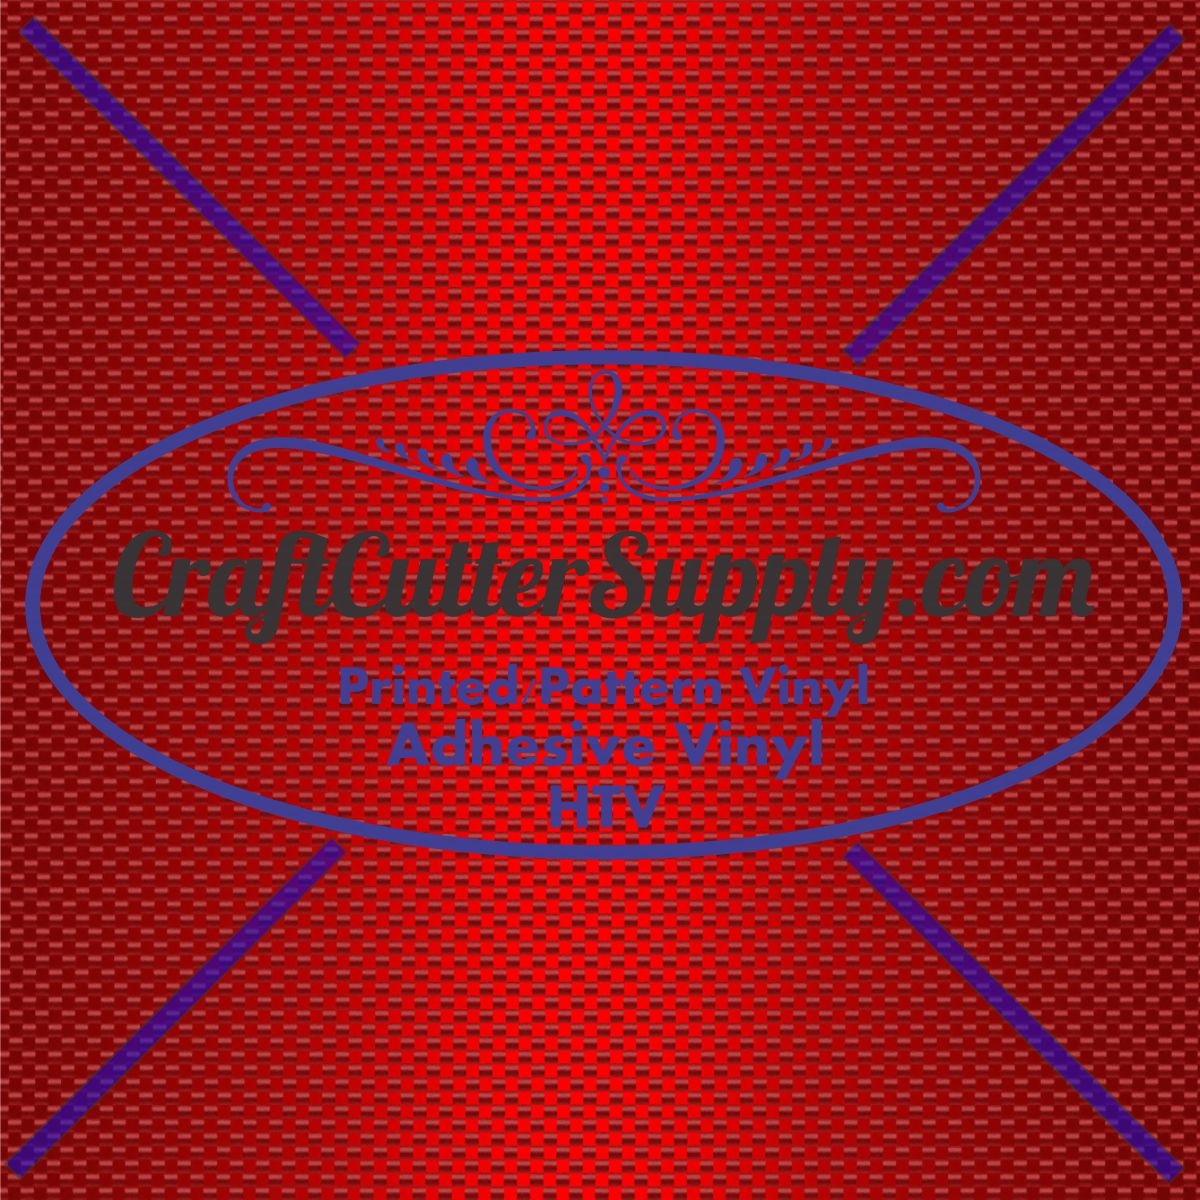 Red Carbon Fiber 12x12 - CraftCutterSupply.com